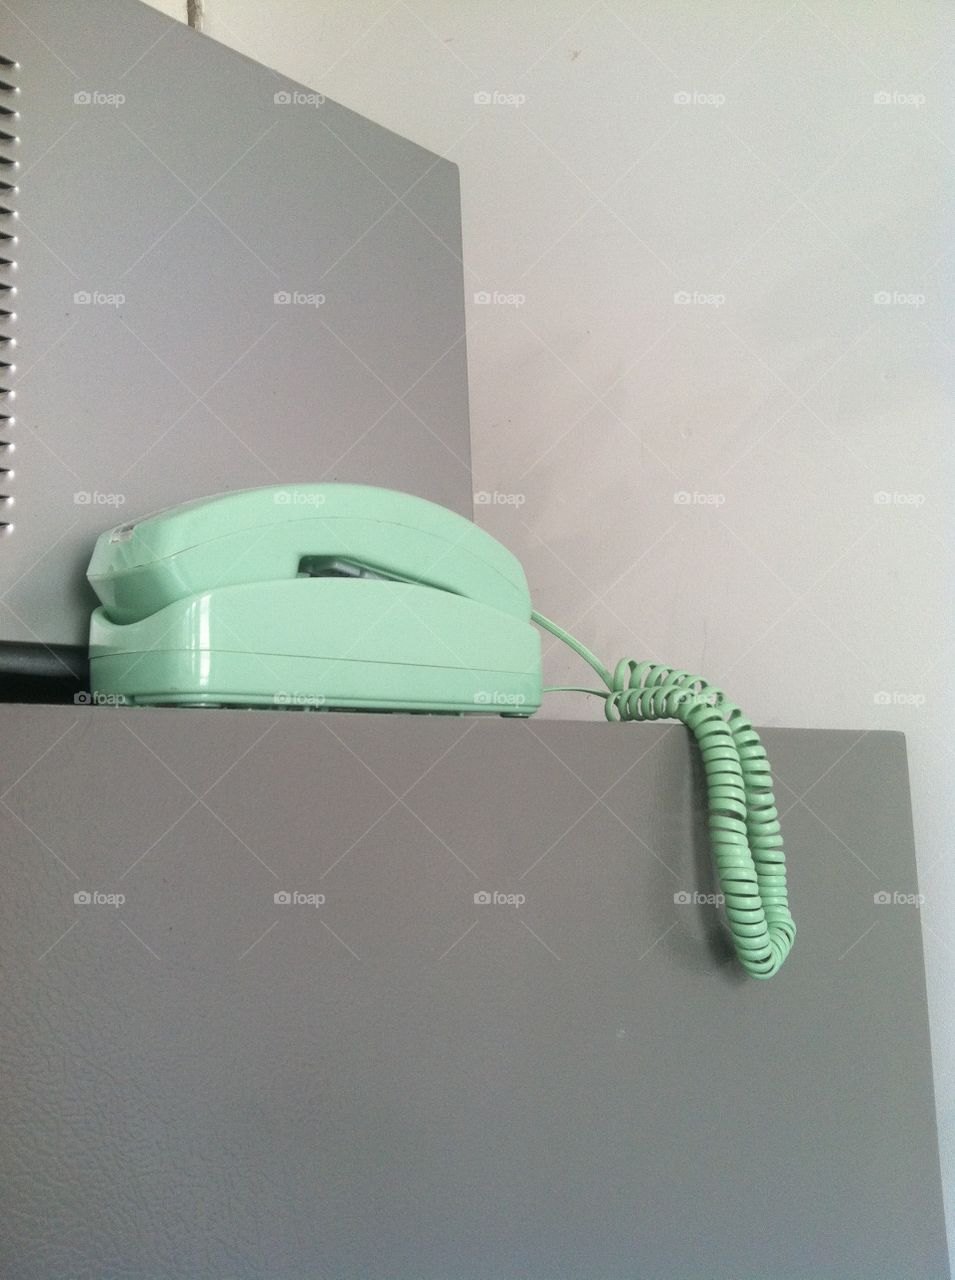 Retro telephone 